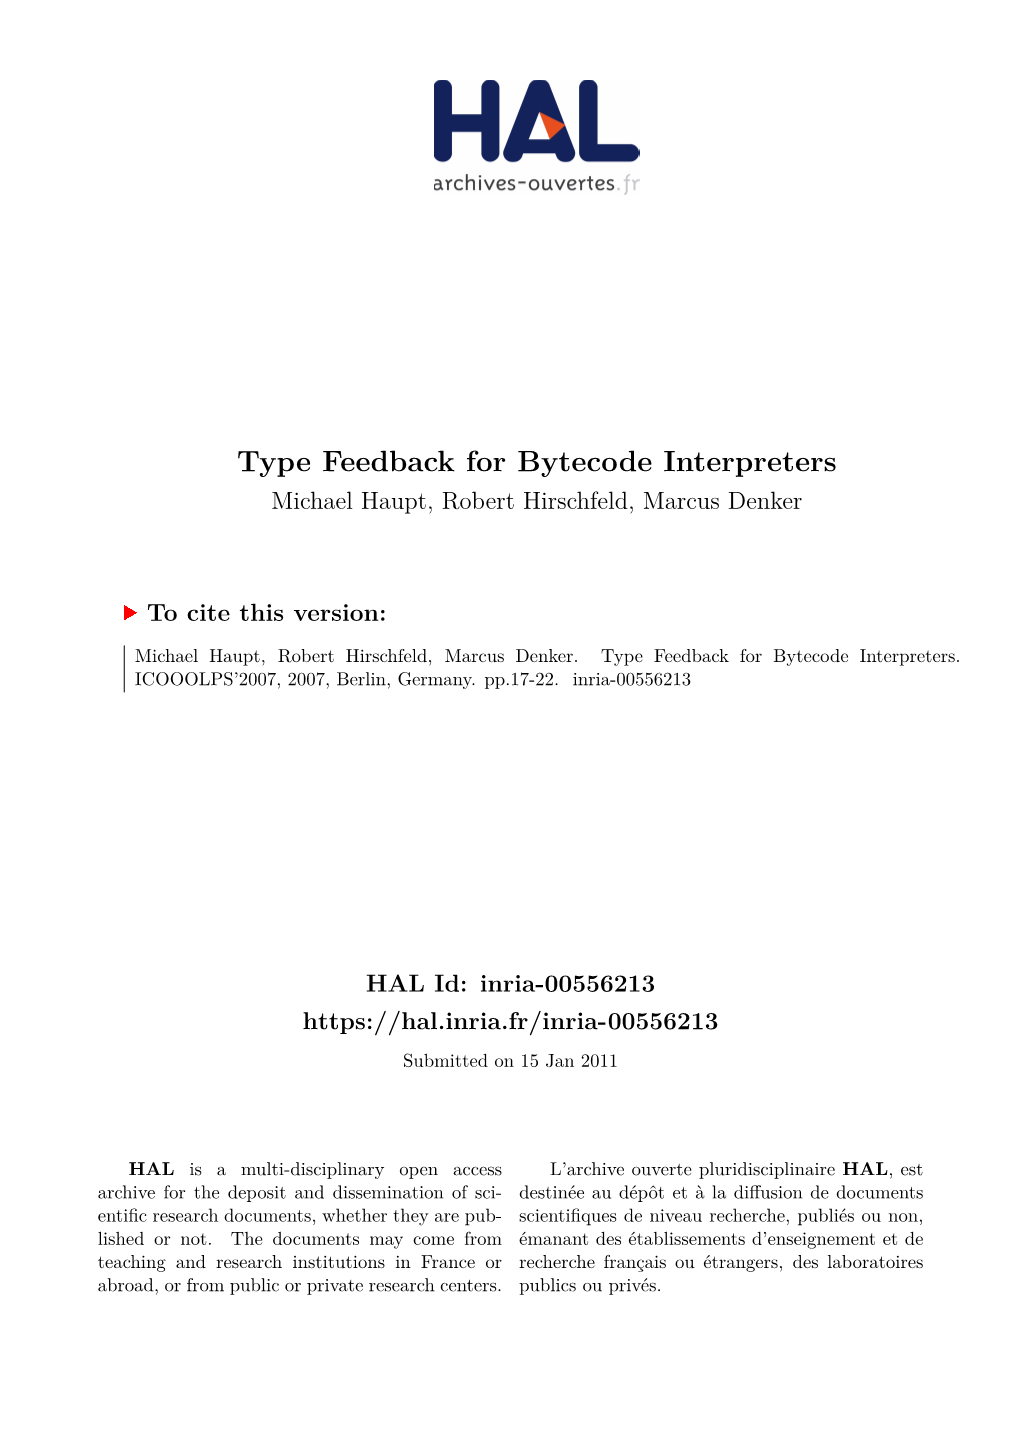 Type Feedback for Bytecode Interpreters Michael Haupt, Robert Hirschfeld, Marcus Denker